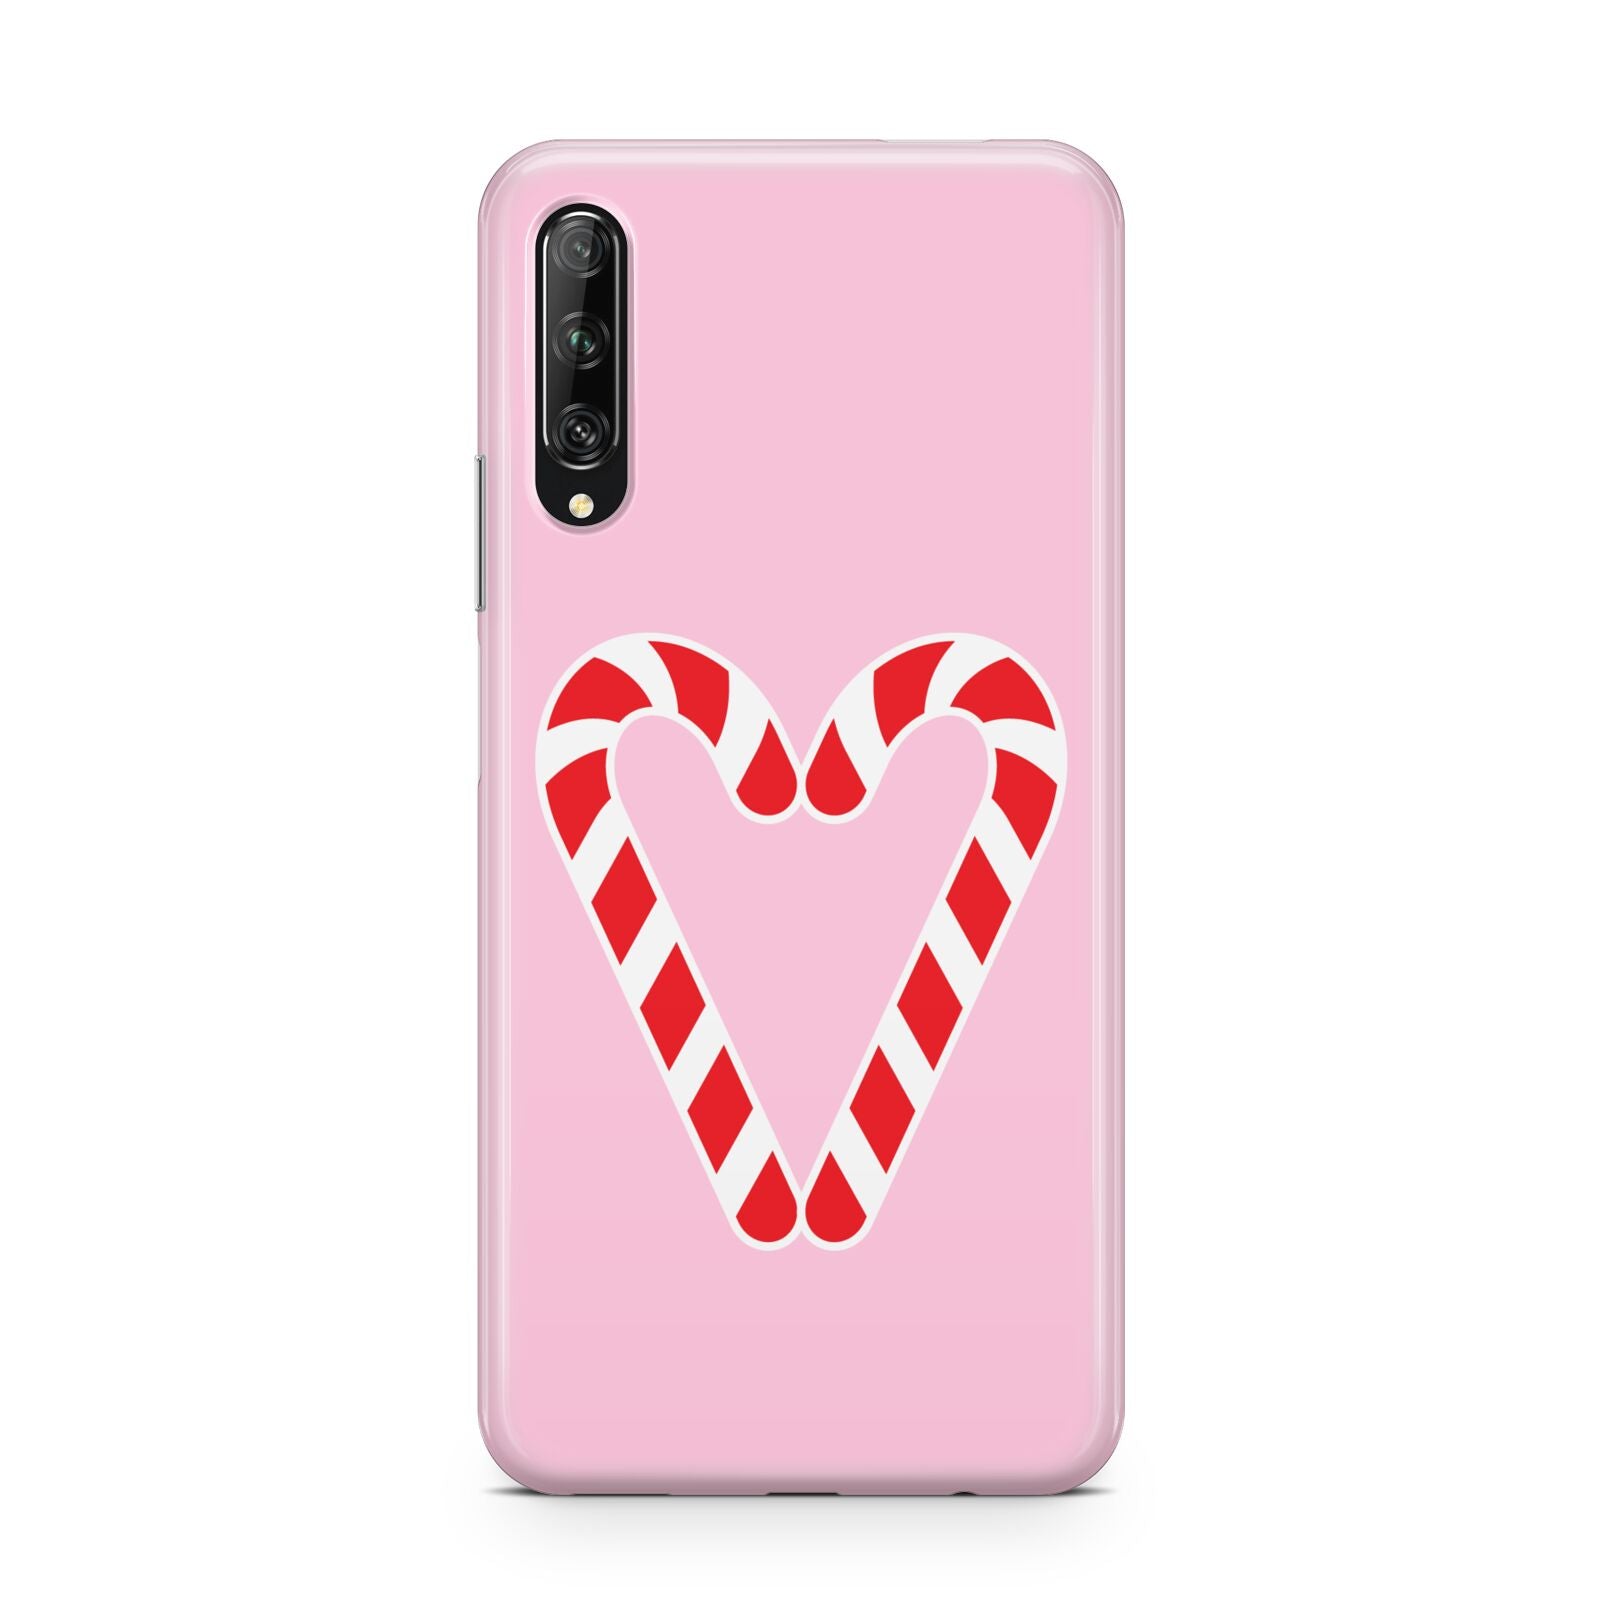 Candy Cane Heart Huawei P Smart Pro 2019